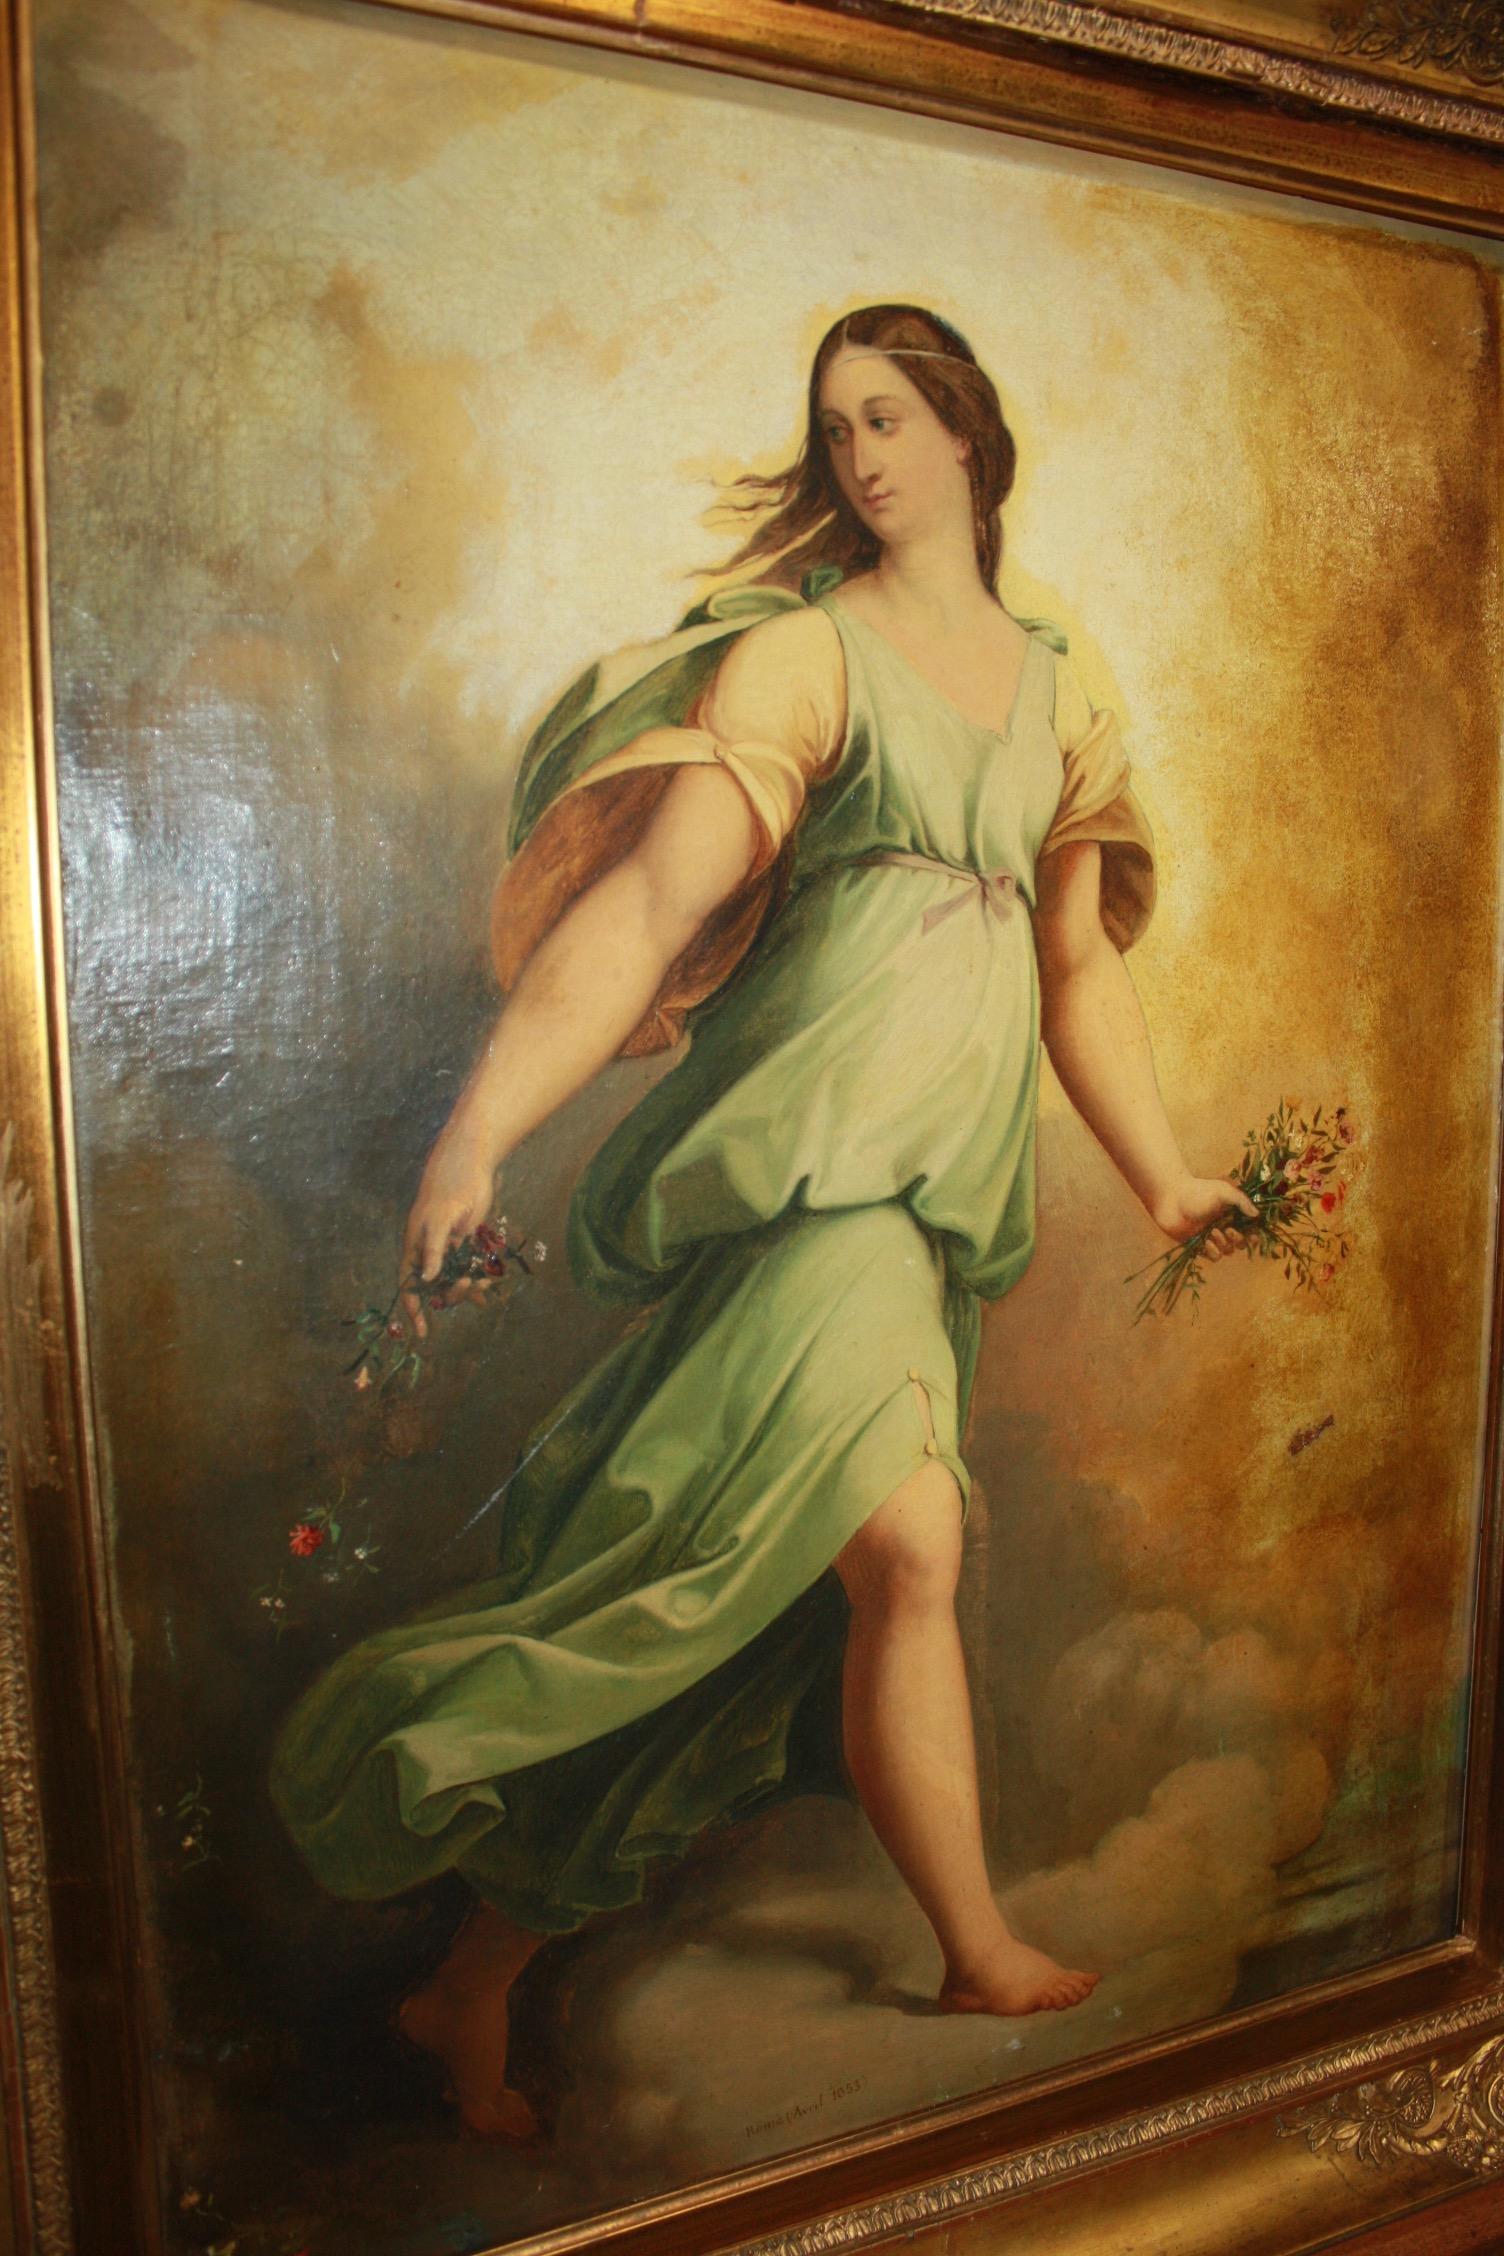 Beautiful mid-19th century Italian oil painting.